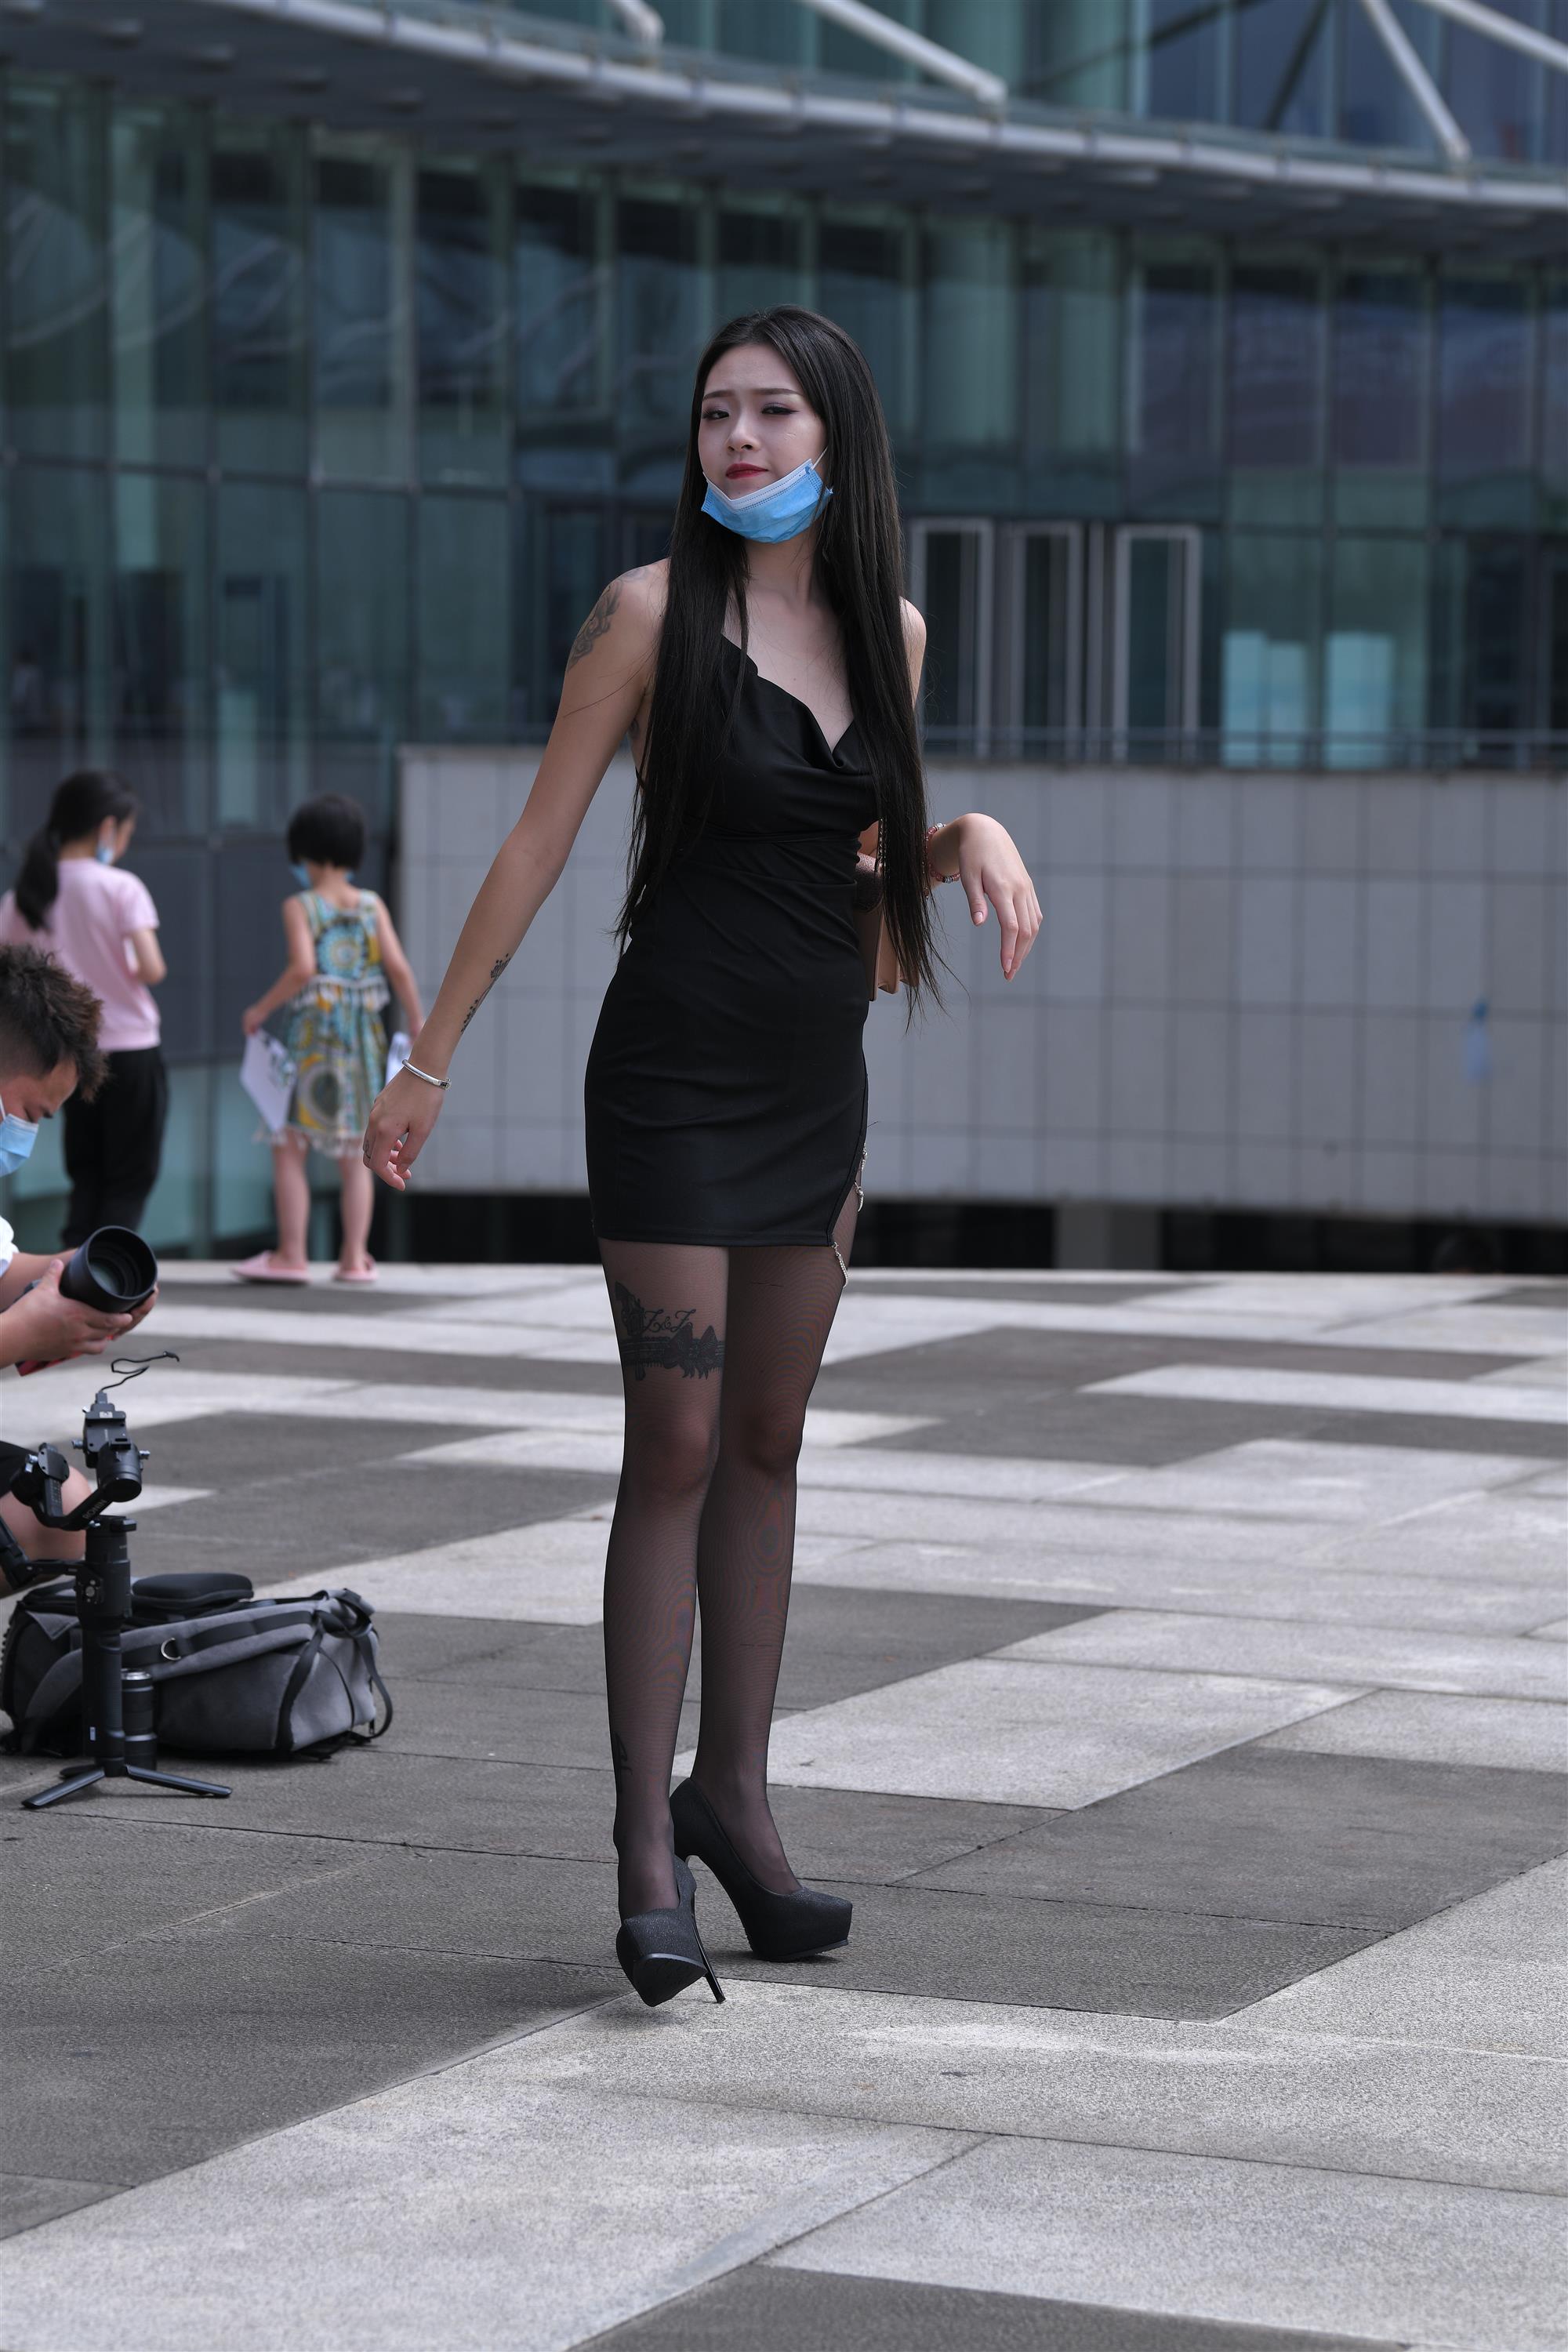 Street black stockings and high heels - 21.jpg